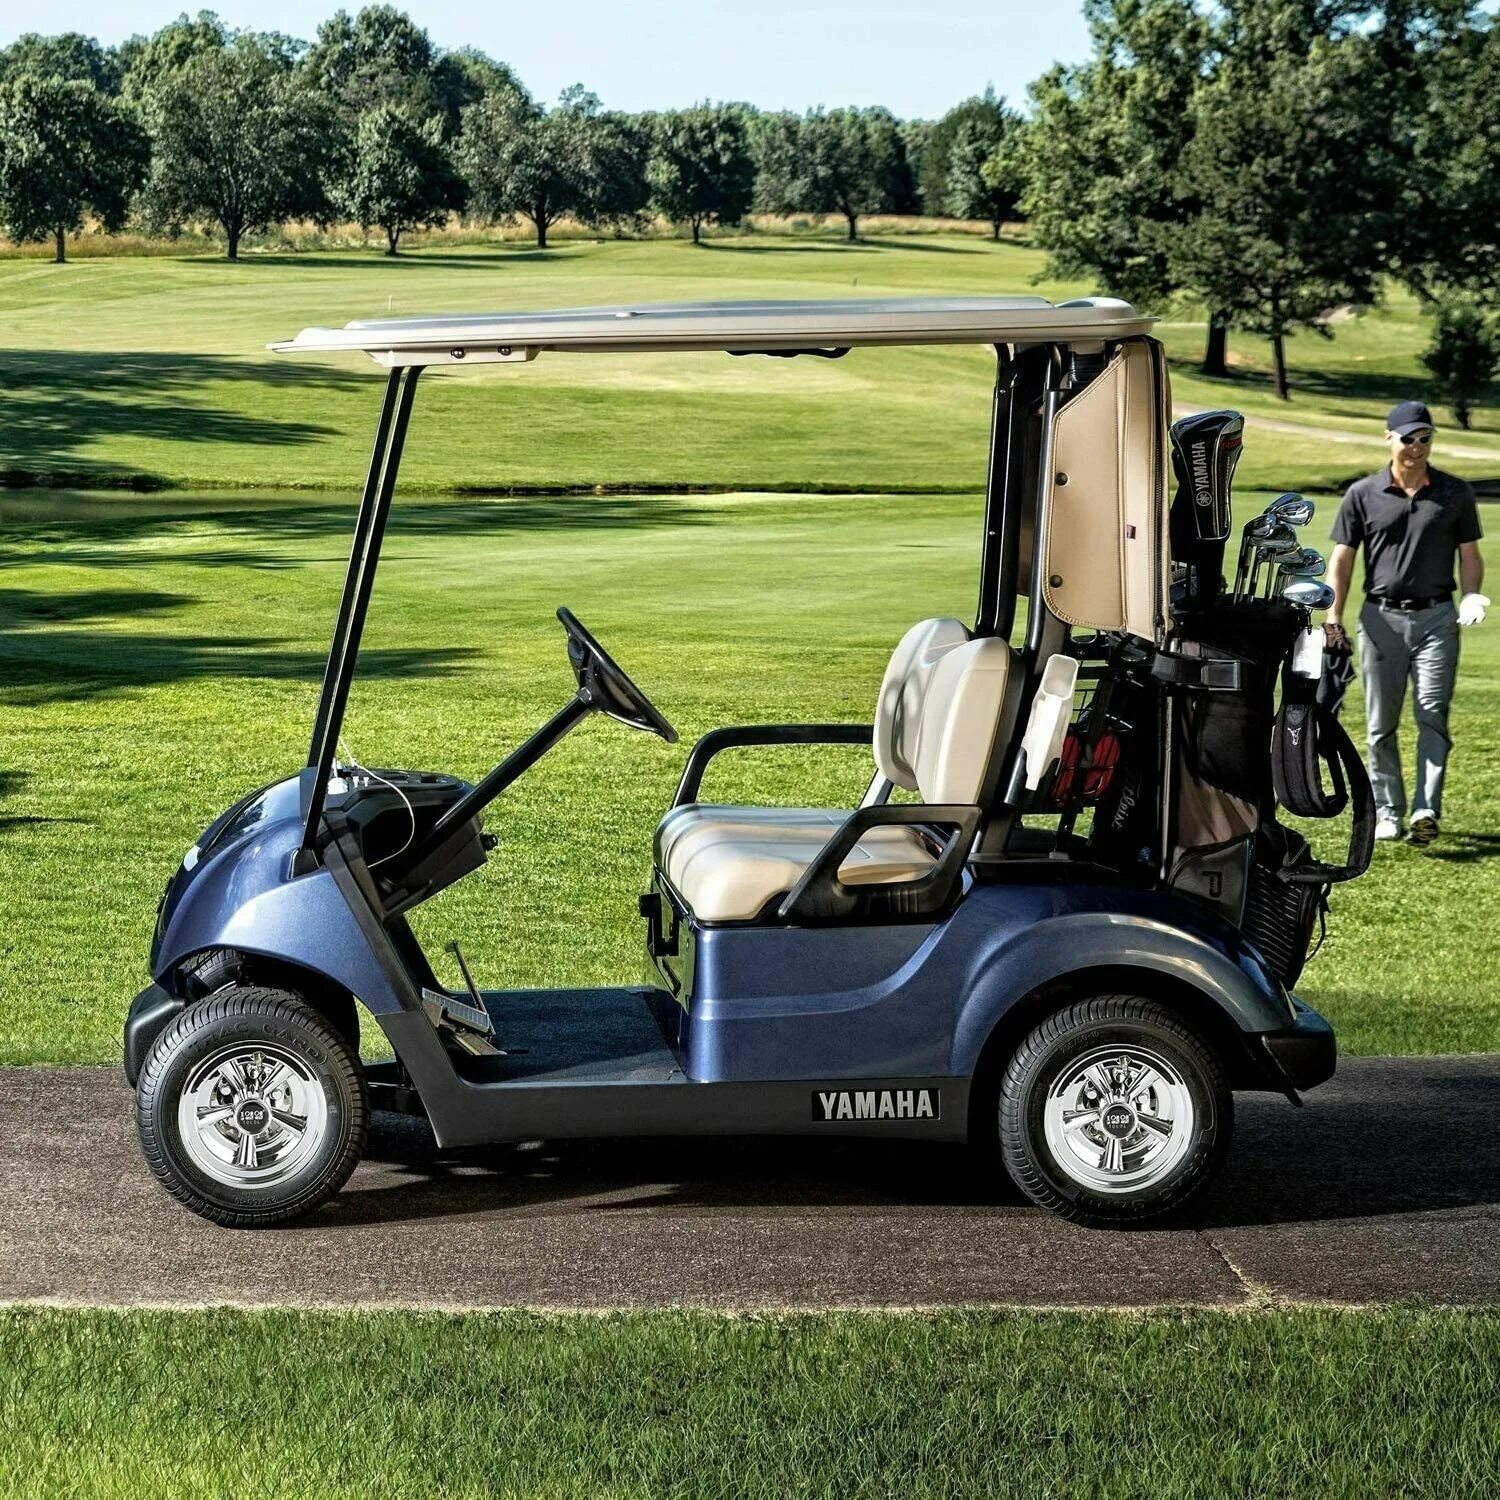 Гольф машина купить. Yamaha Golf Cart. Golf Cart 4wd. Фольксваген 181 гольф кар. Yamaha Golf Cart g16.